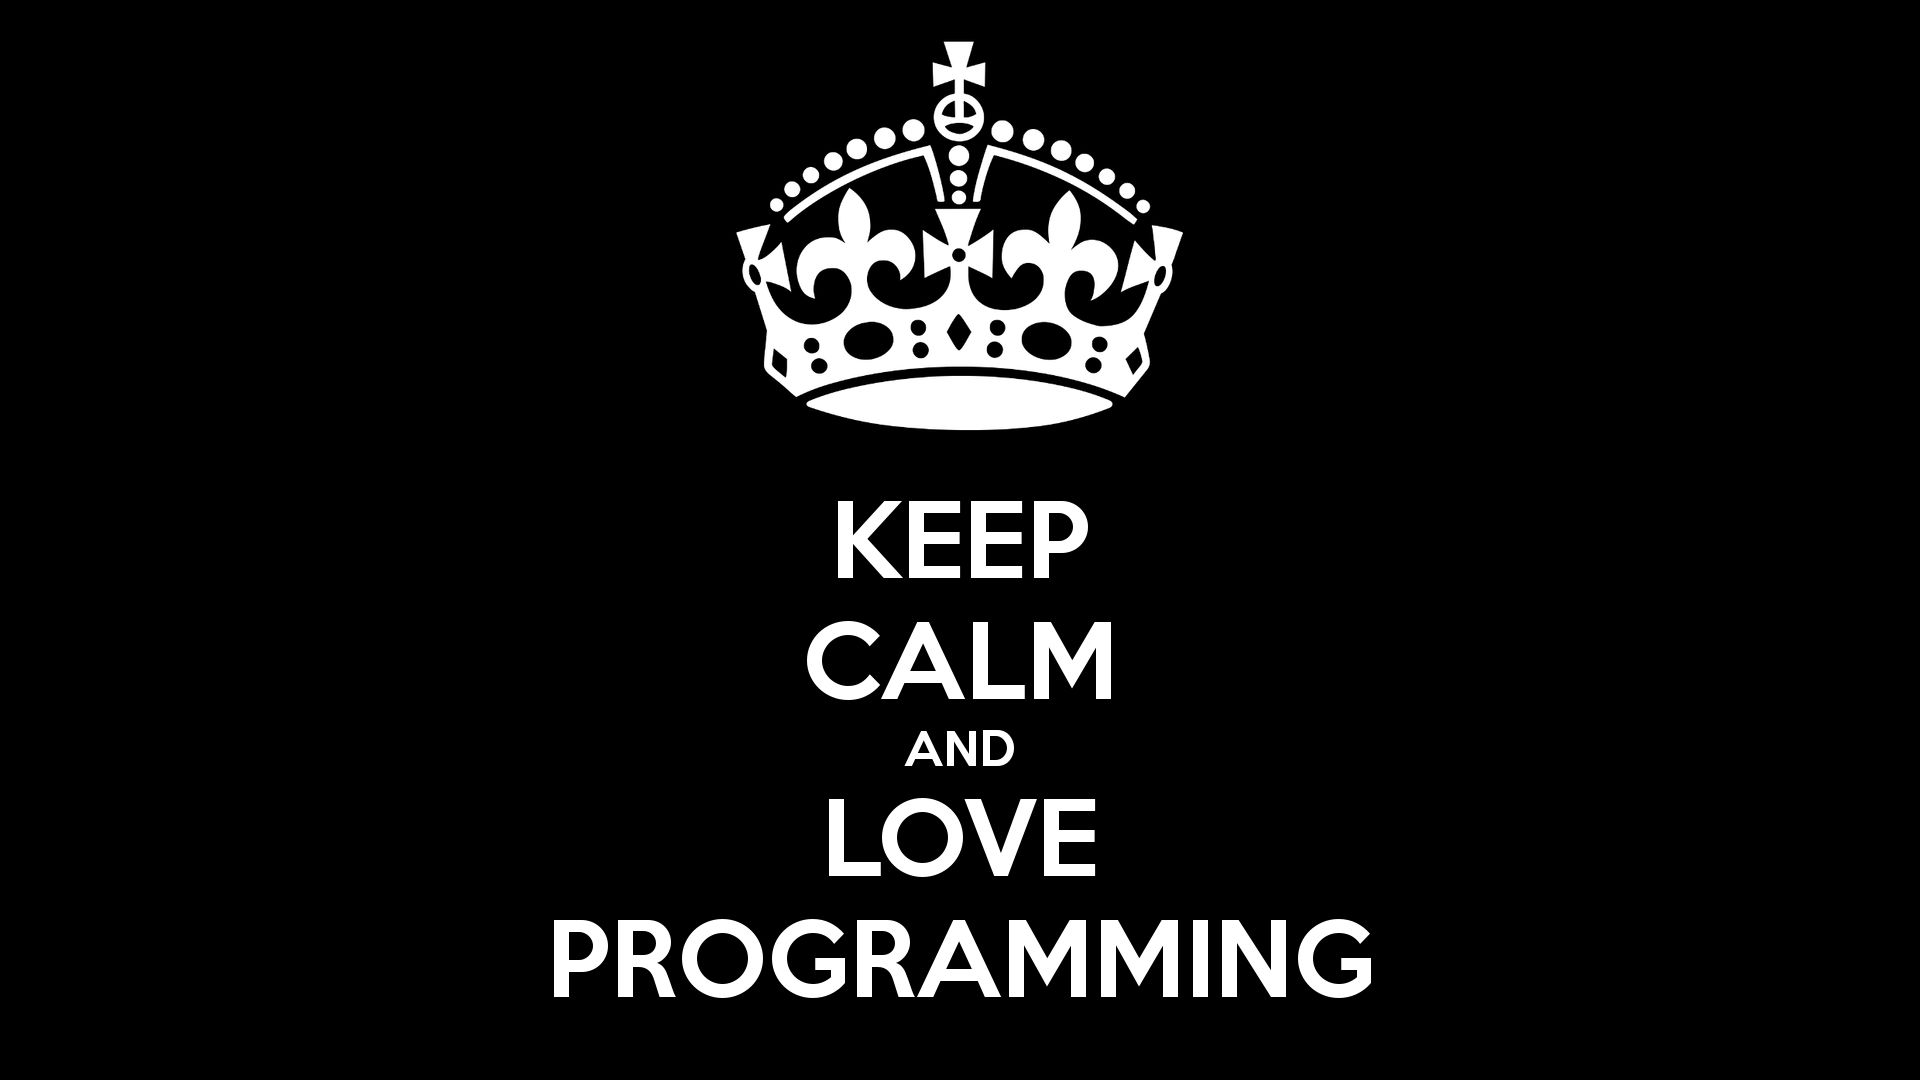 programming, technology Free Stock Photo